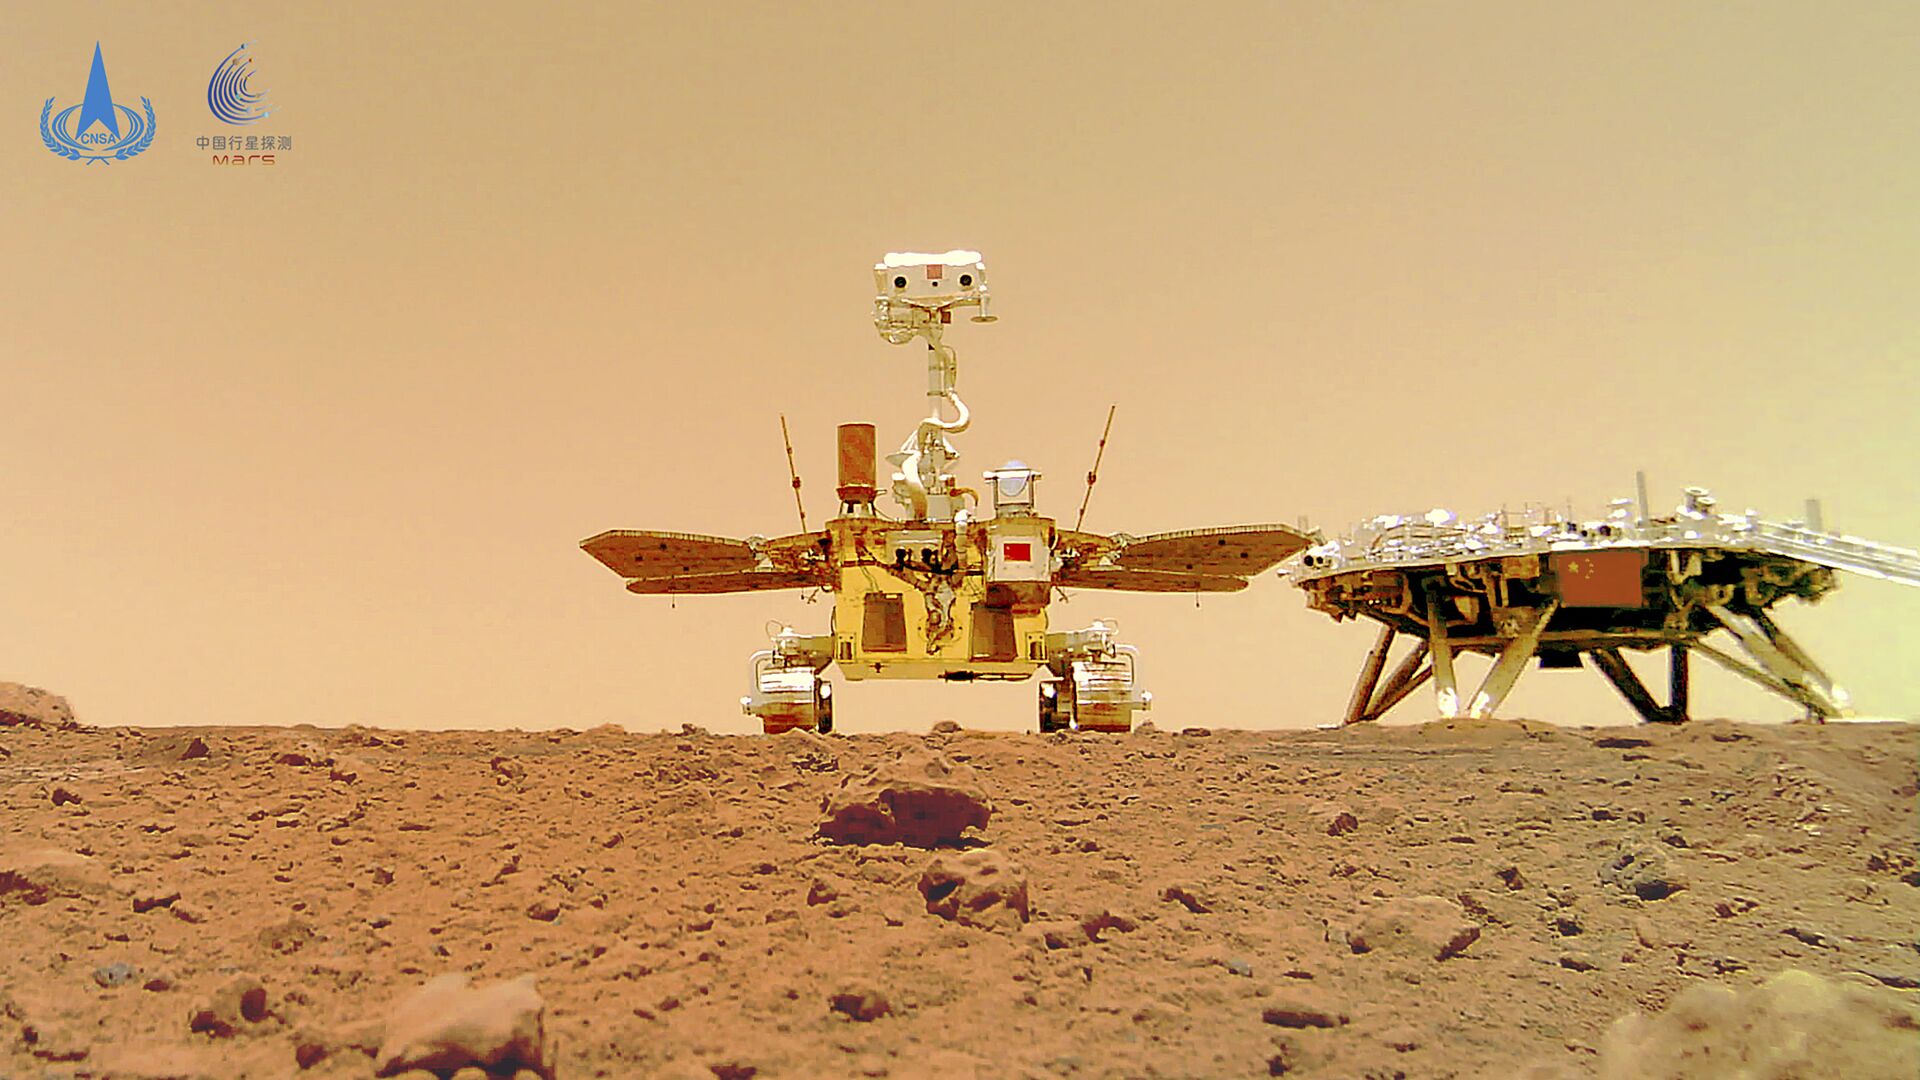 Kineski rover Džurong na površini Marsa - Sputnik Srbija, 1920, 18.06.2021